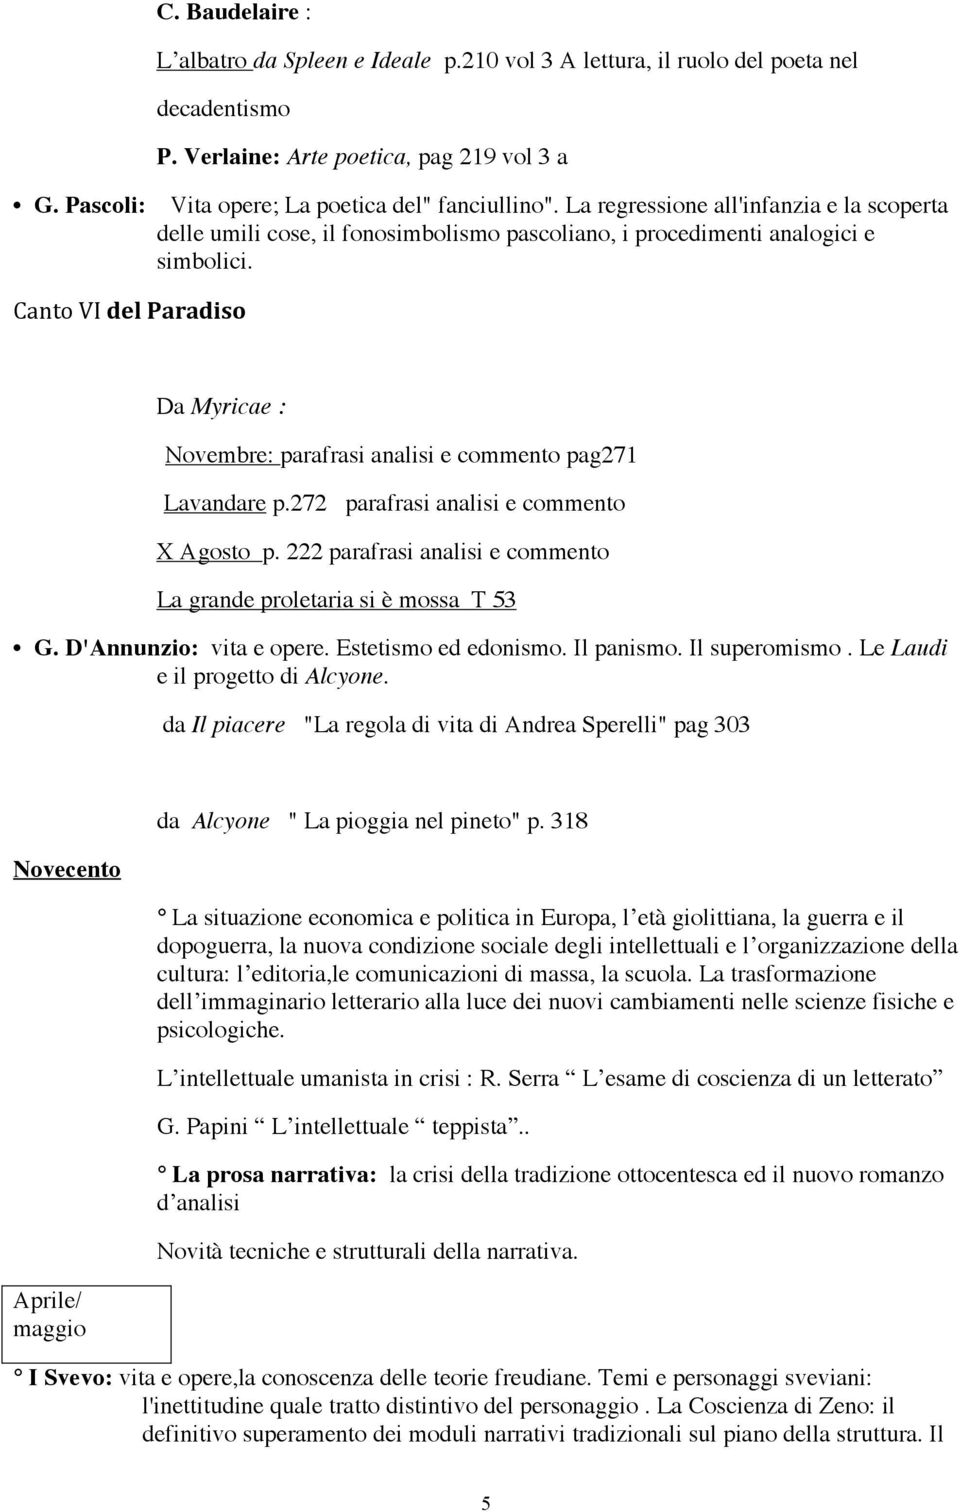 CantoVIdelParadiso Da Myricae : Novembre: parafrasi analisi e commento pag271 Lavandare p.272 parafrasi analisi e commento X Agosto p.